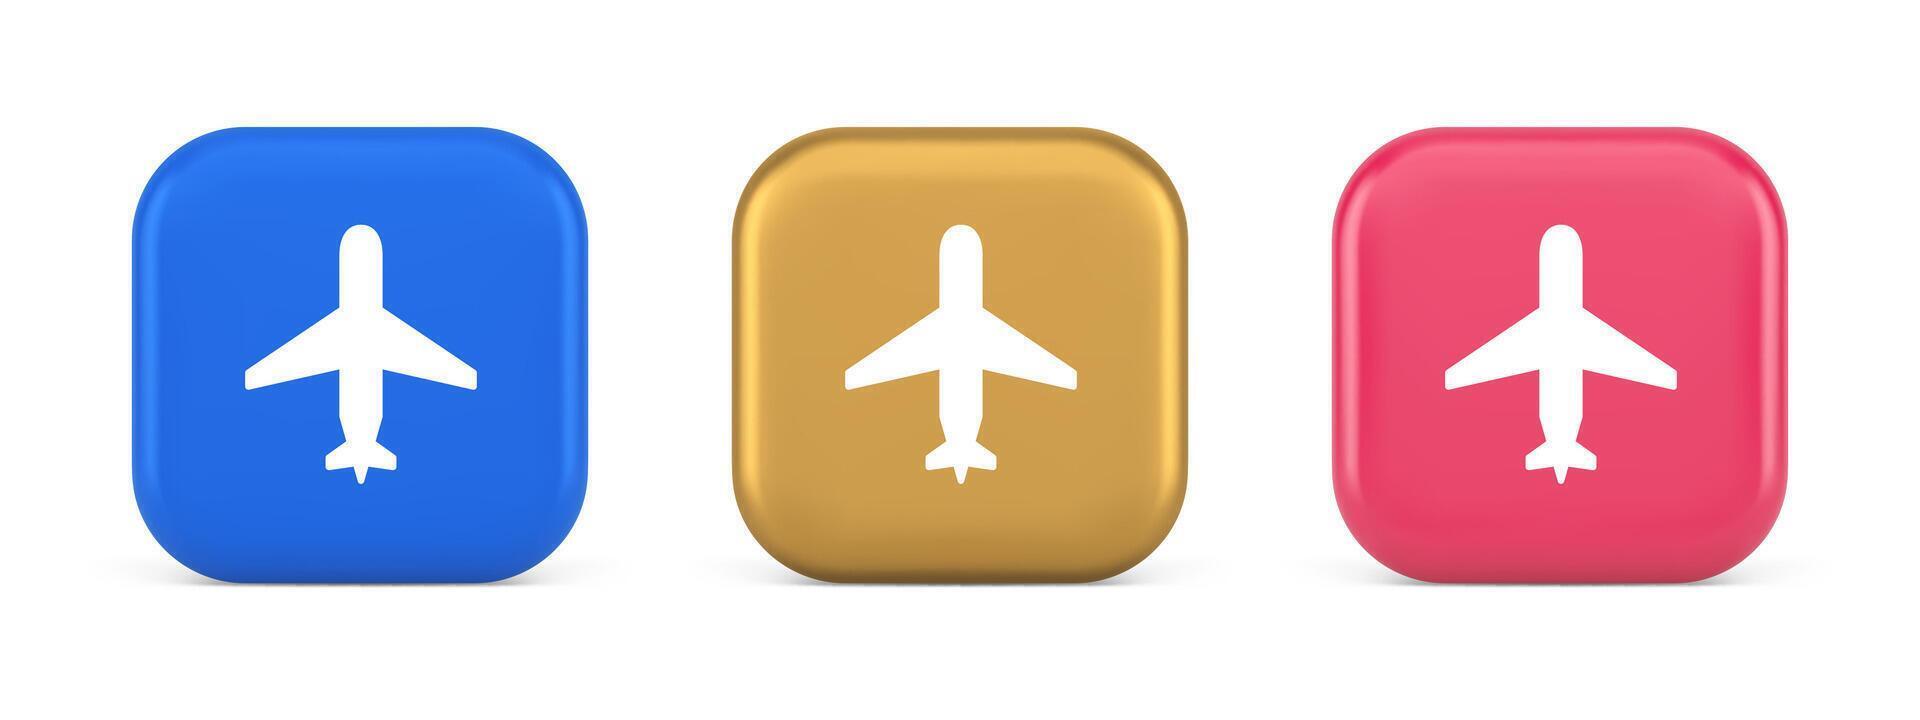 avion en ligne vérifier dans bouton numérique un service passager enregistrement 3d réaliste icône vecteur